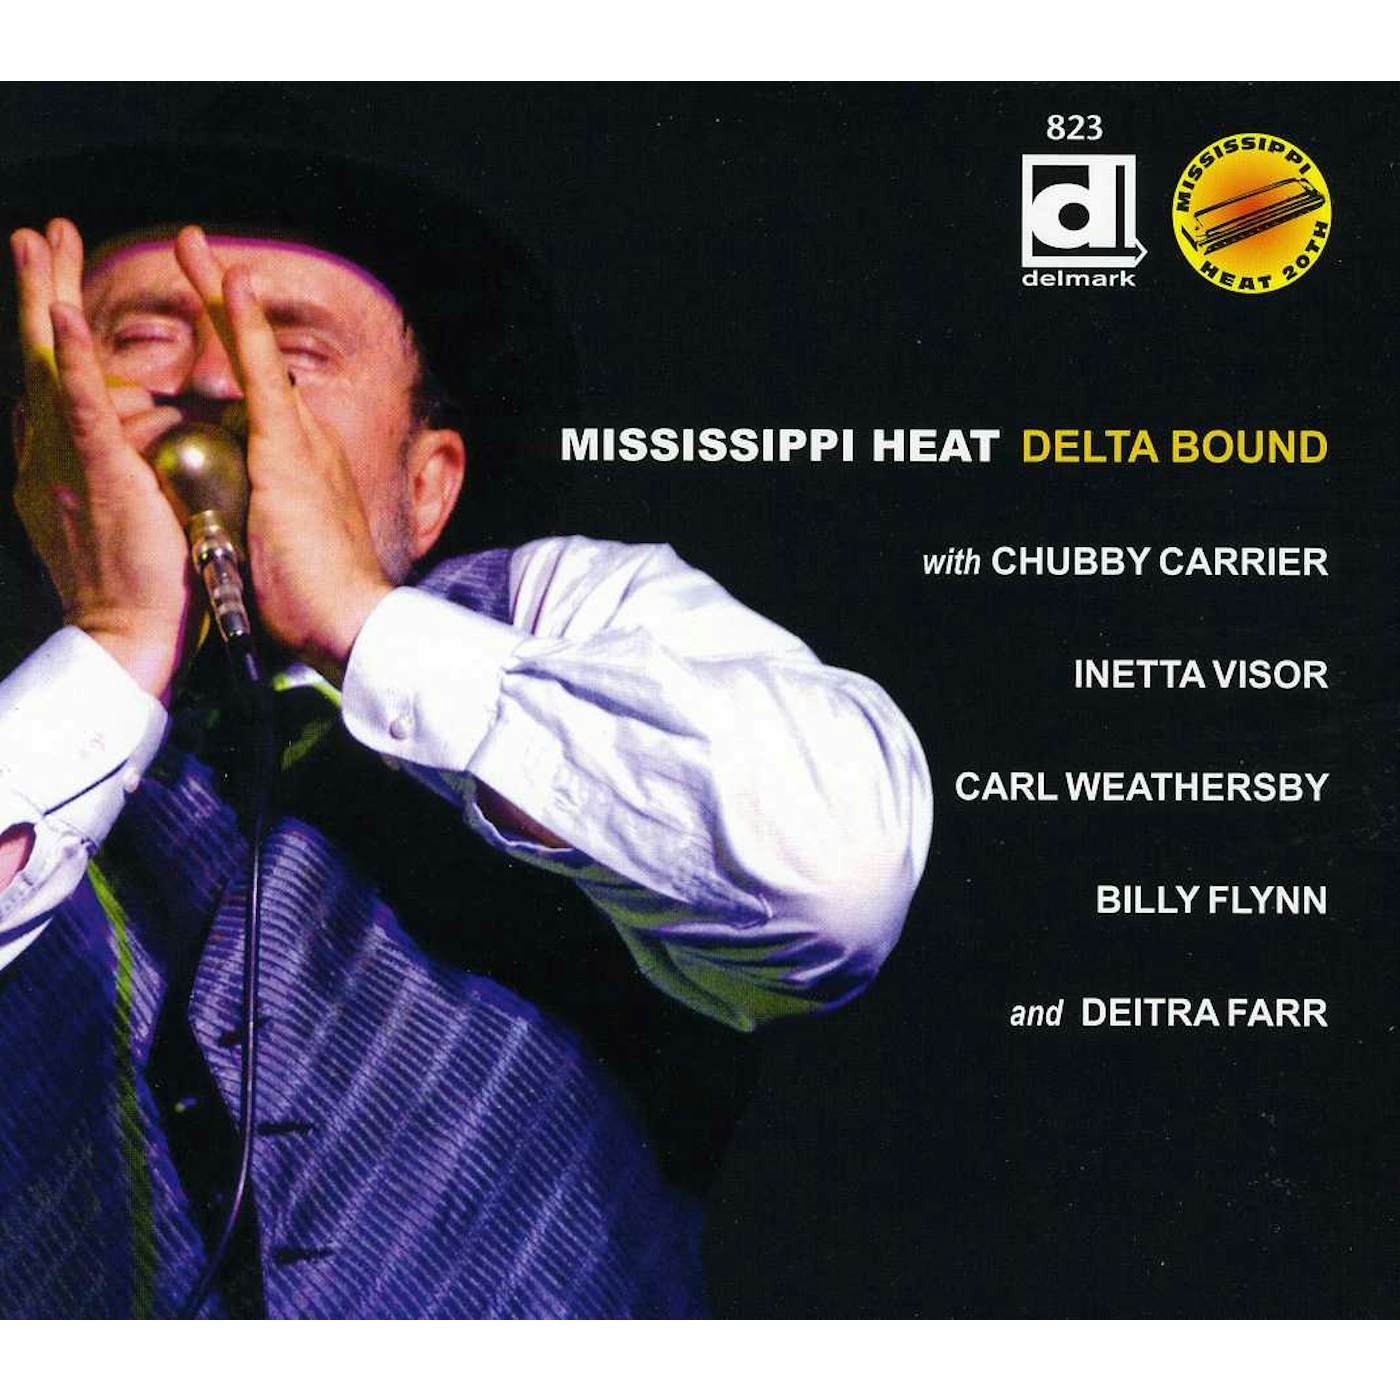 Mississippi Heat DELTA BOUND CD